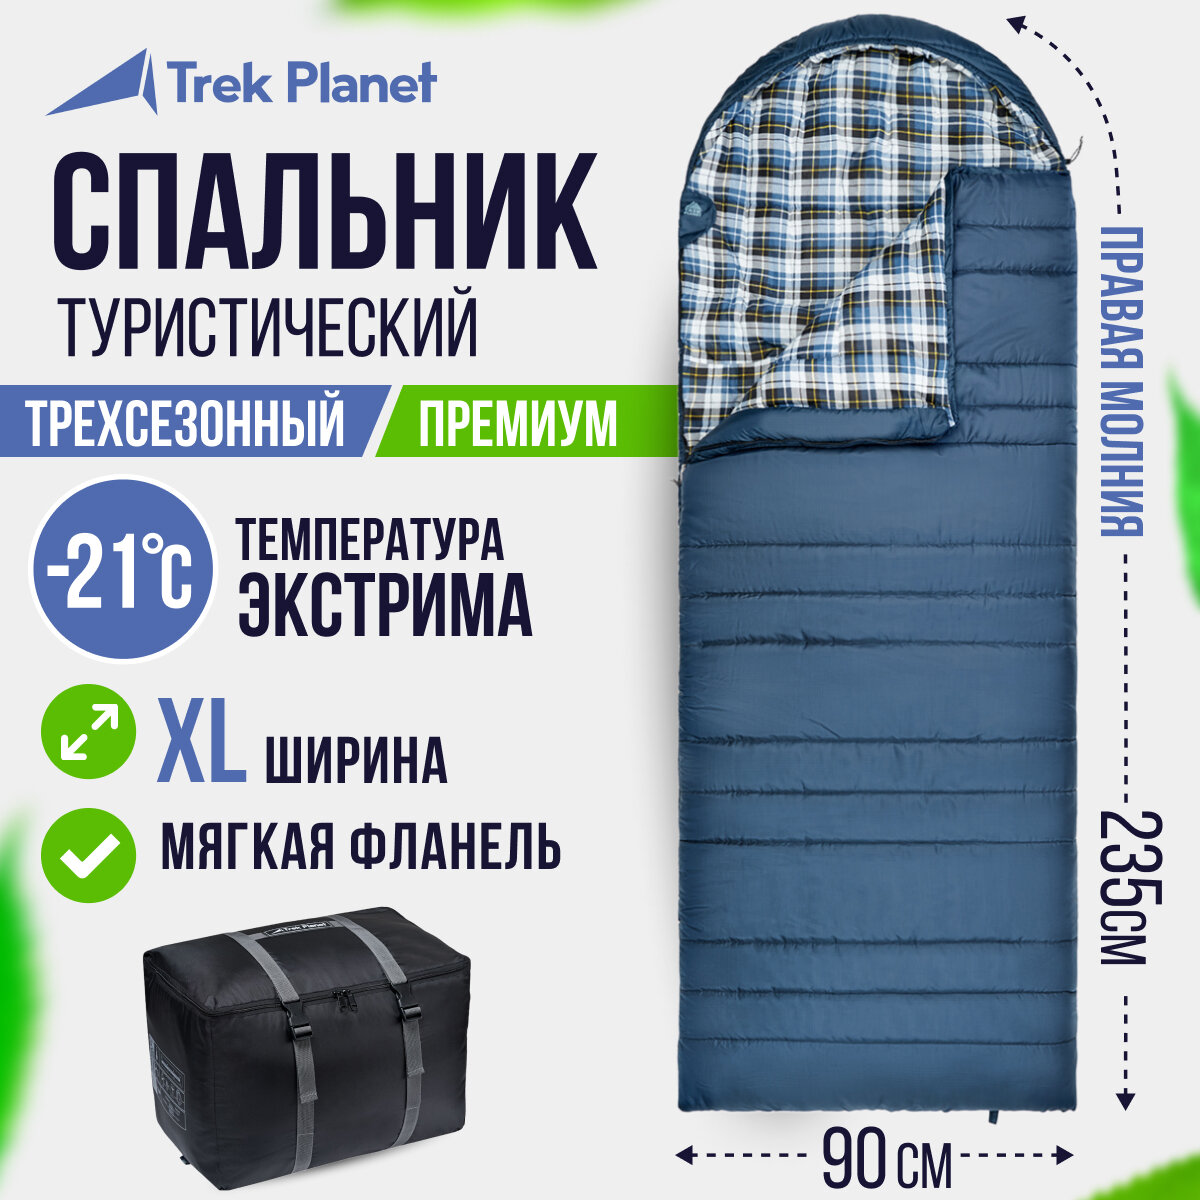 Спальный мешок TREK PLANET Douglas Wide Comfort, с фланелью, правая молния, цвет: синий